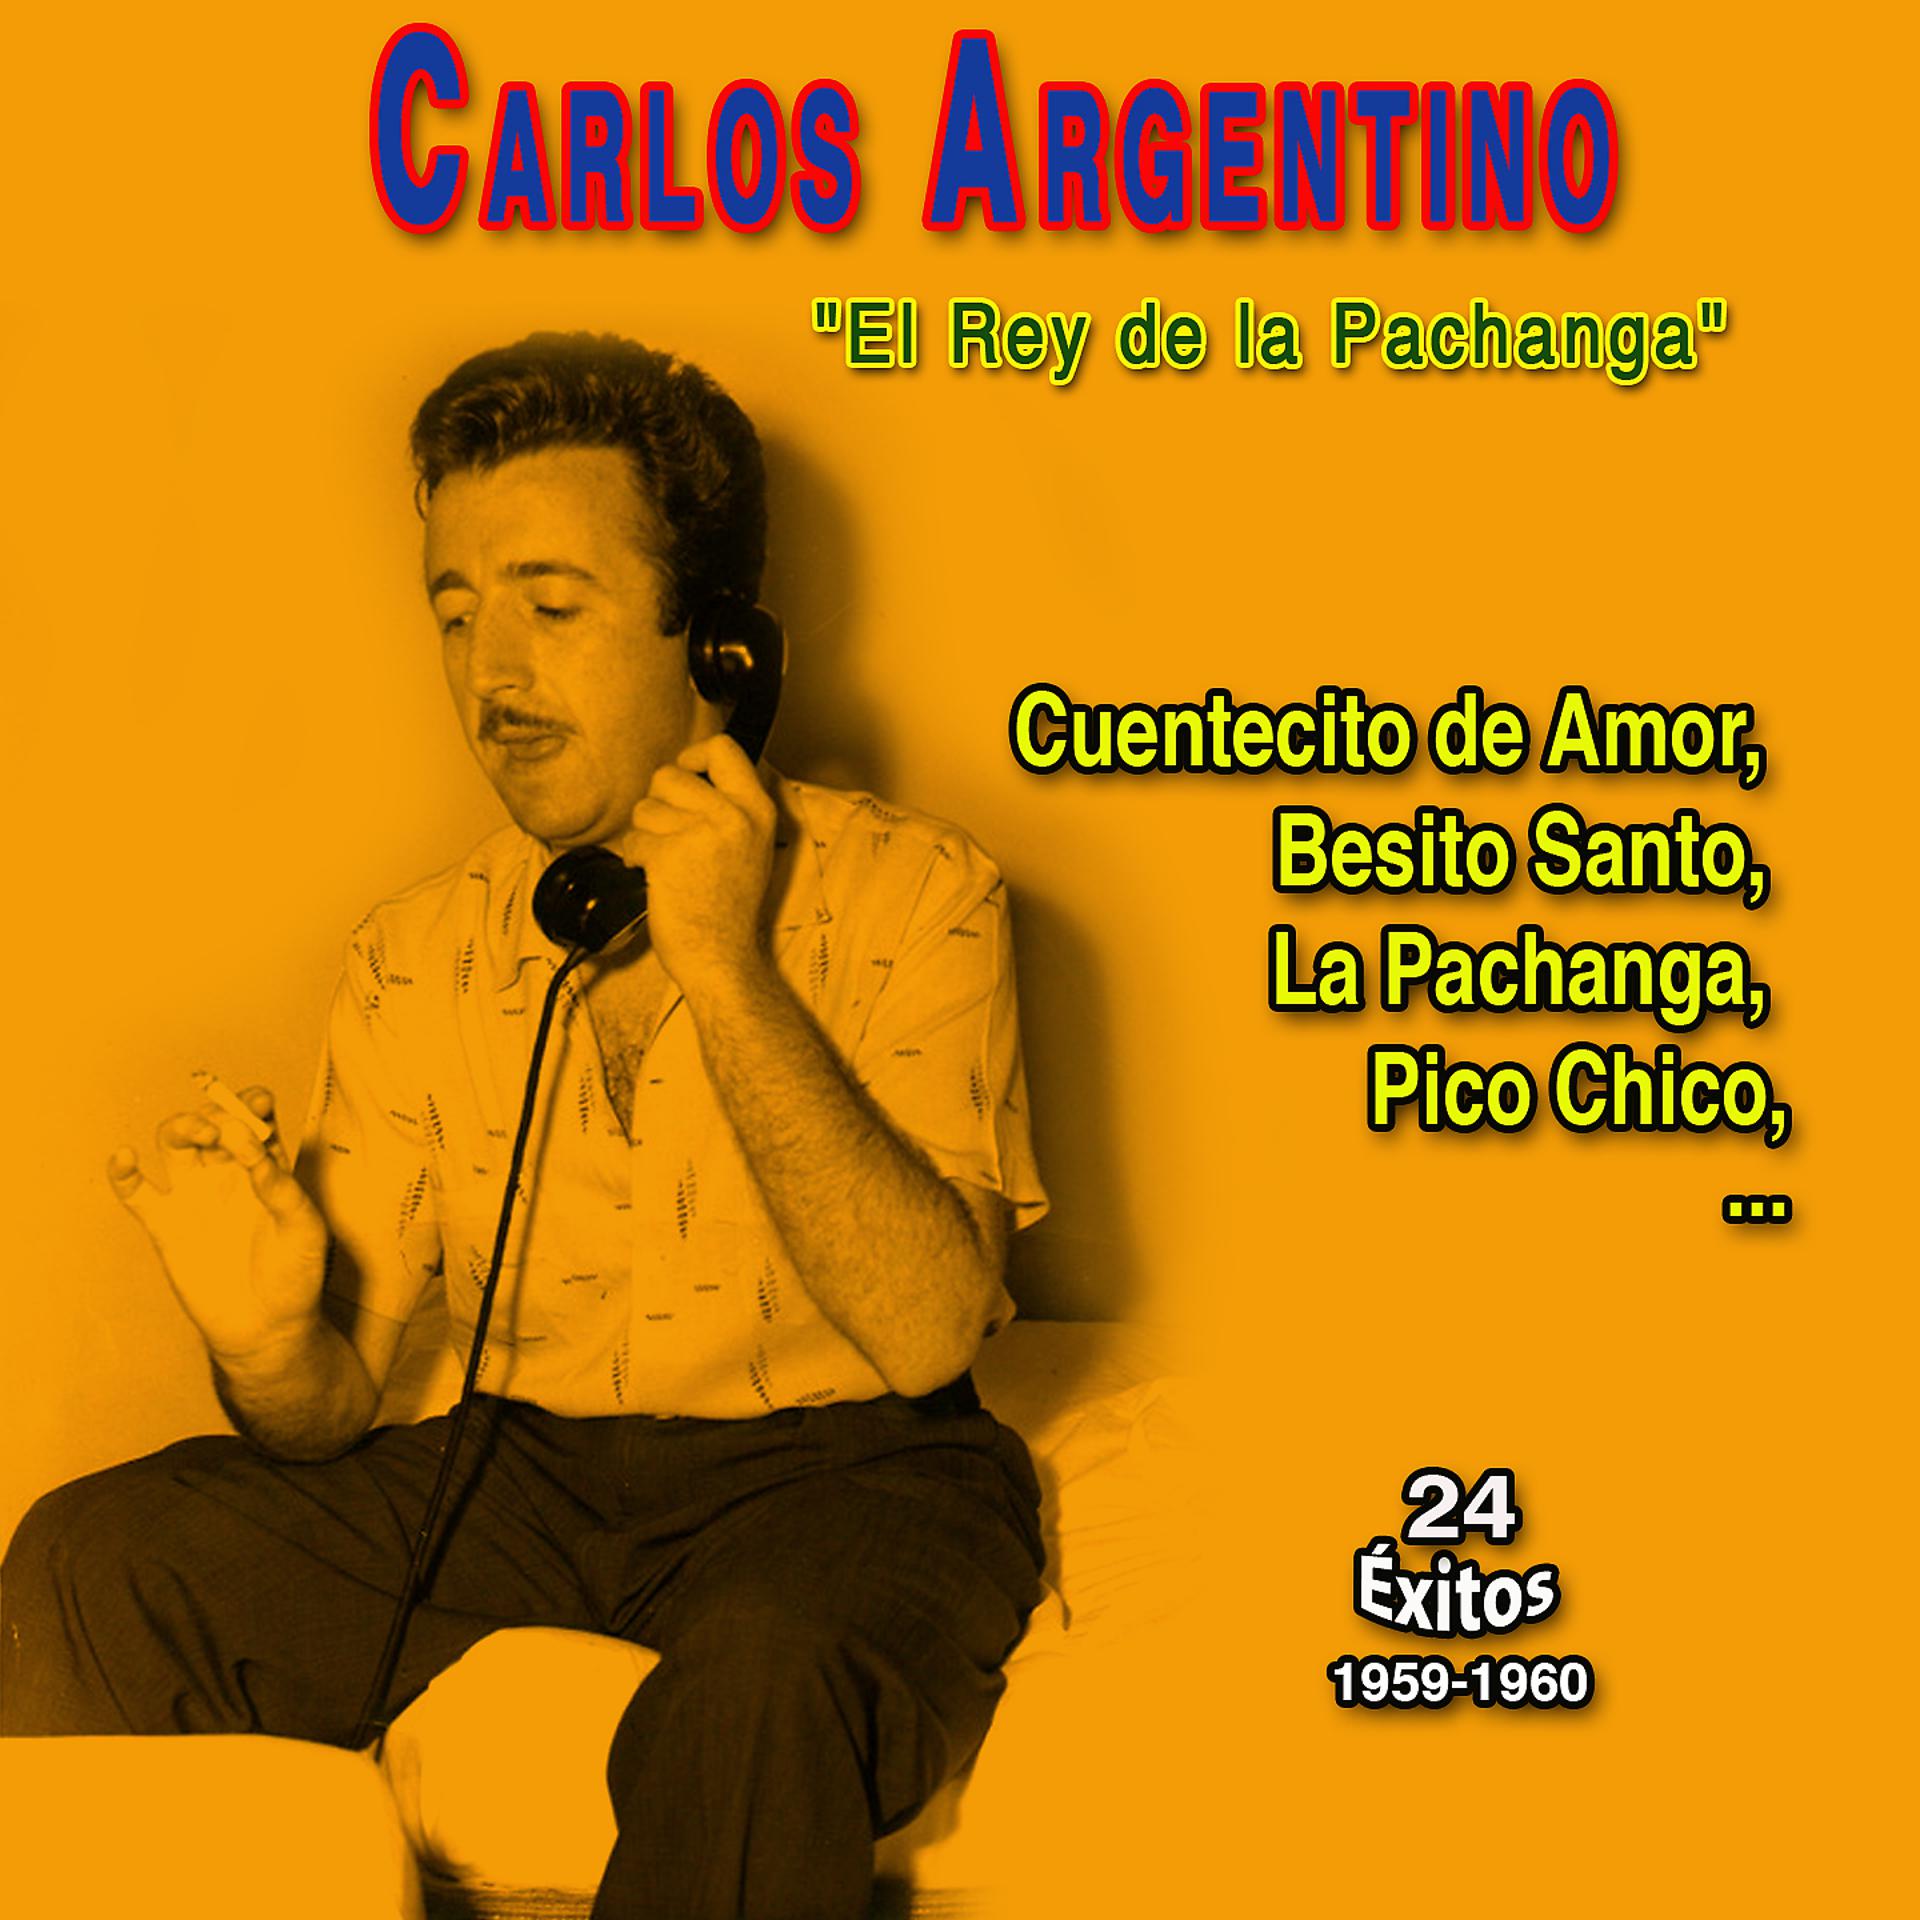 Постер альбома "El Rey de la Pachanga" Carlos Argentino